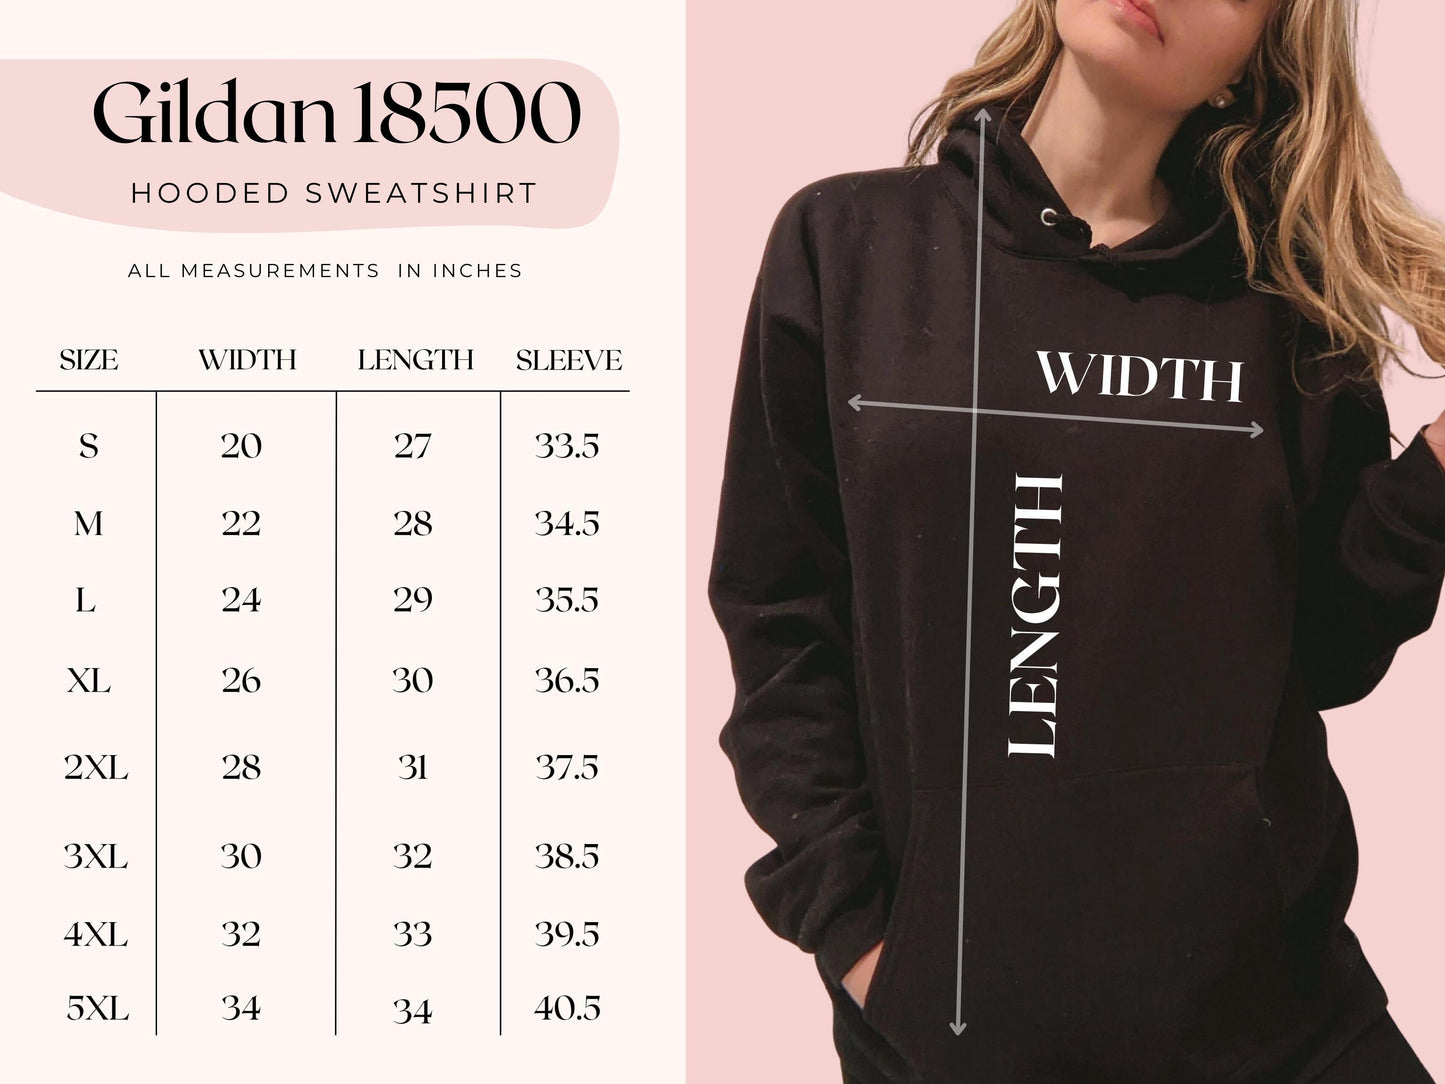 No Regrets Hoodie | Unisex hoodies for men and women